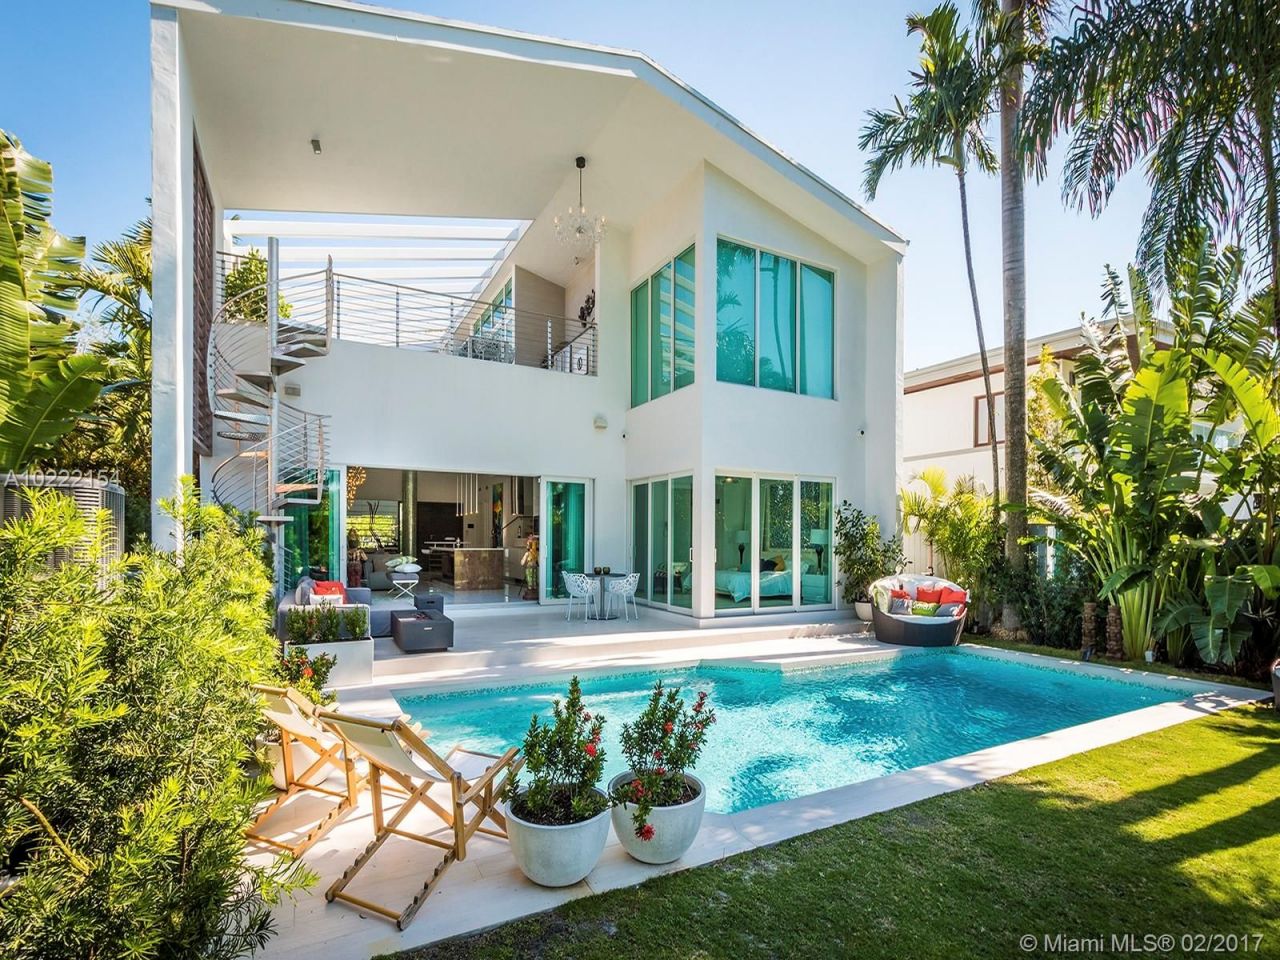 Villa in Miami, USA, 310 m2 - Foto 1